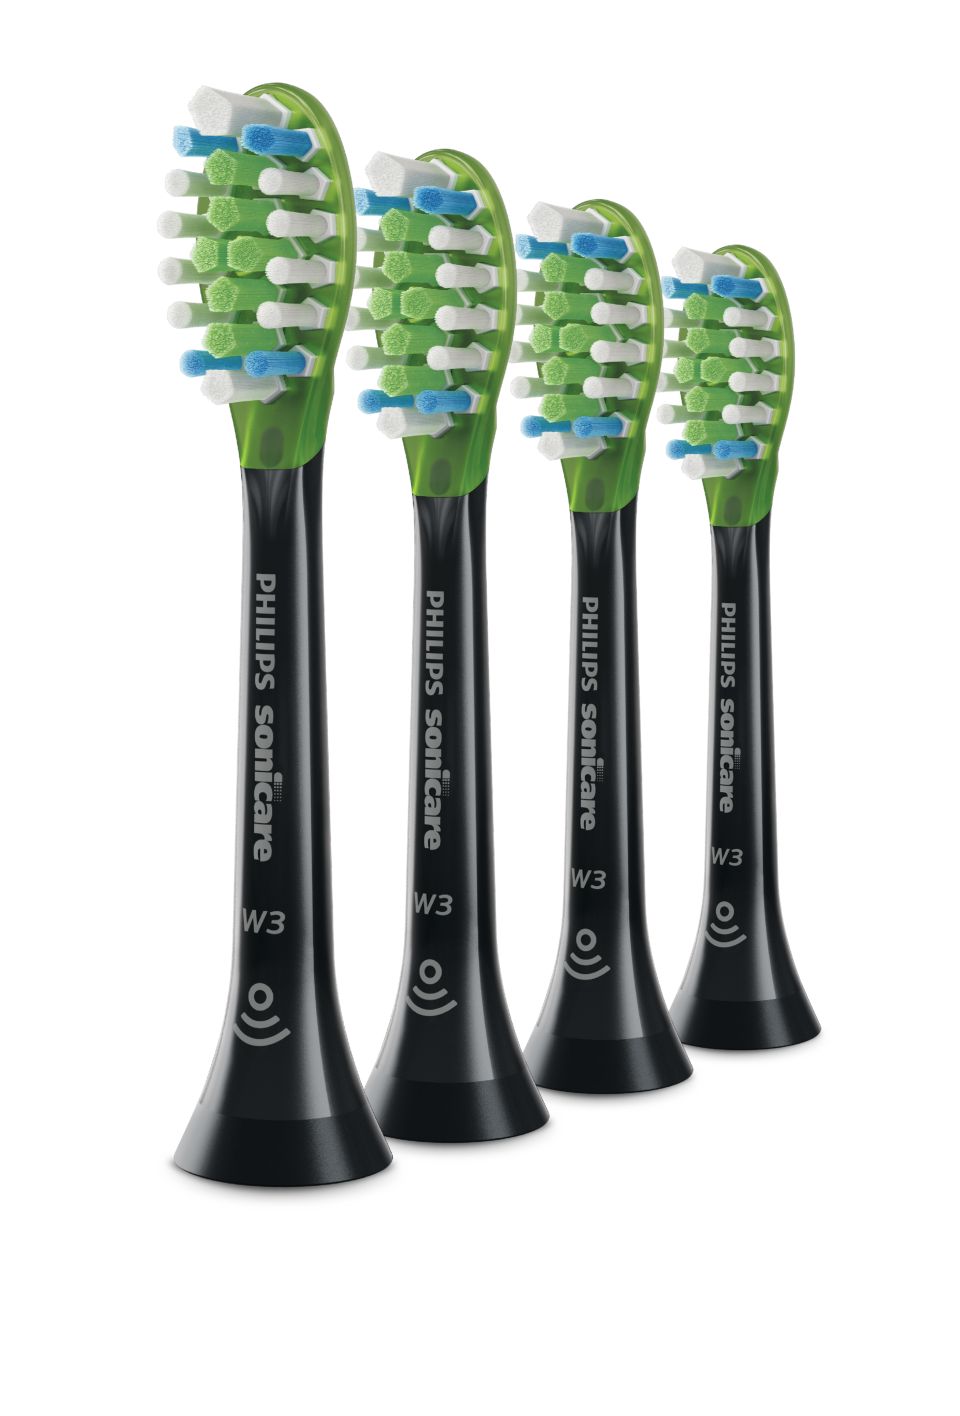 W3 Premium White Standard sonic toothbrush HX9064/95 | Sonicare